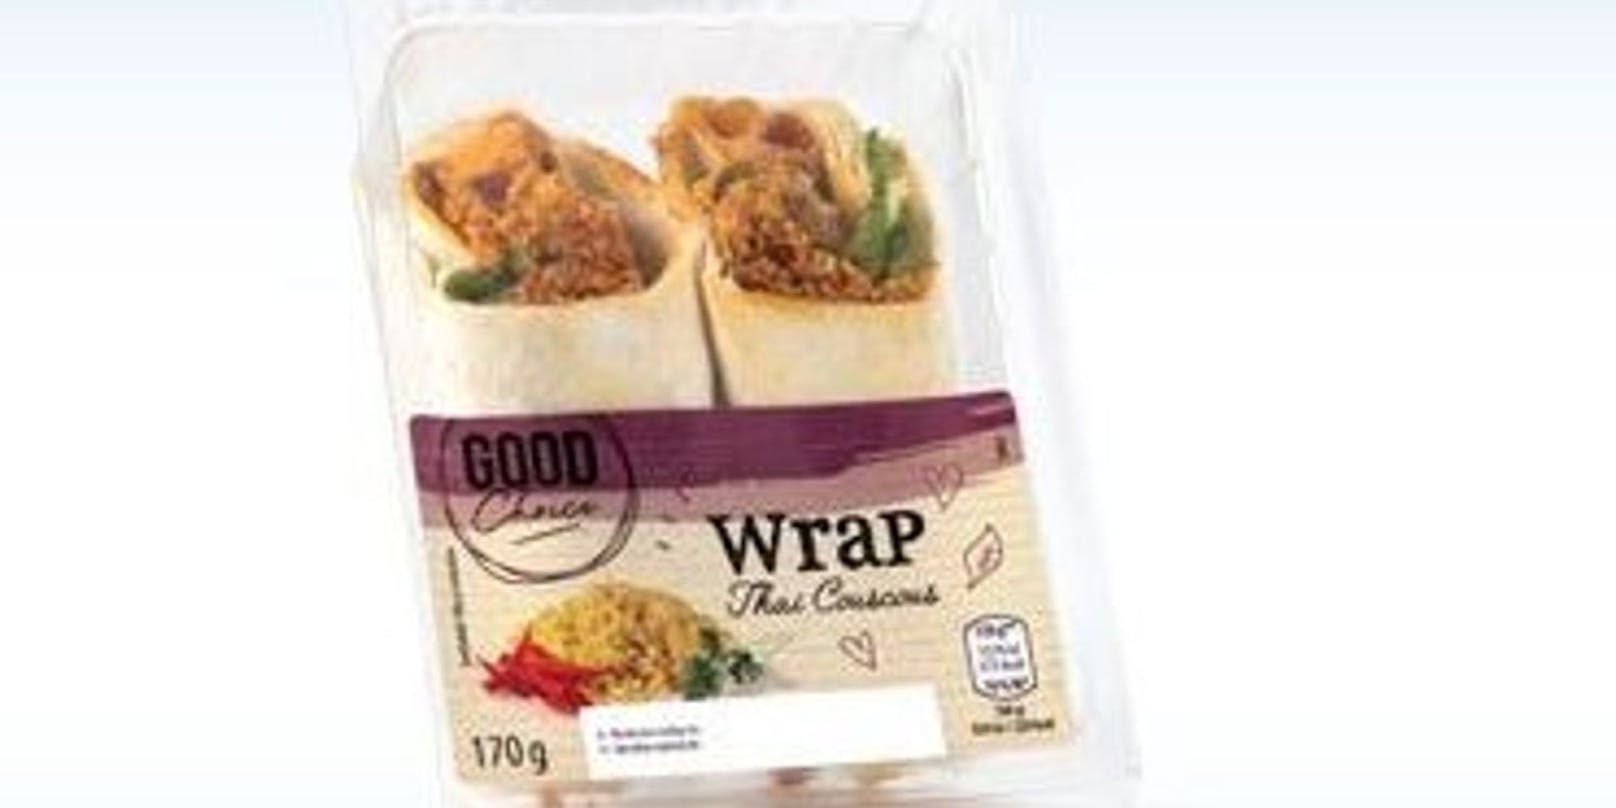 Hofer ruft den "Good Choice Wrap Thai Couscous von Wojnar‘s Wiener Leckerb. GmbH" zurück.